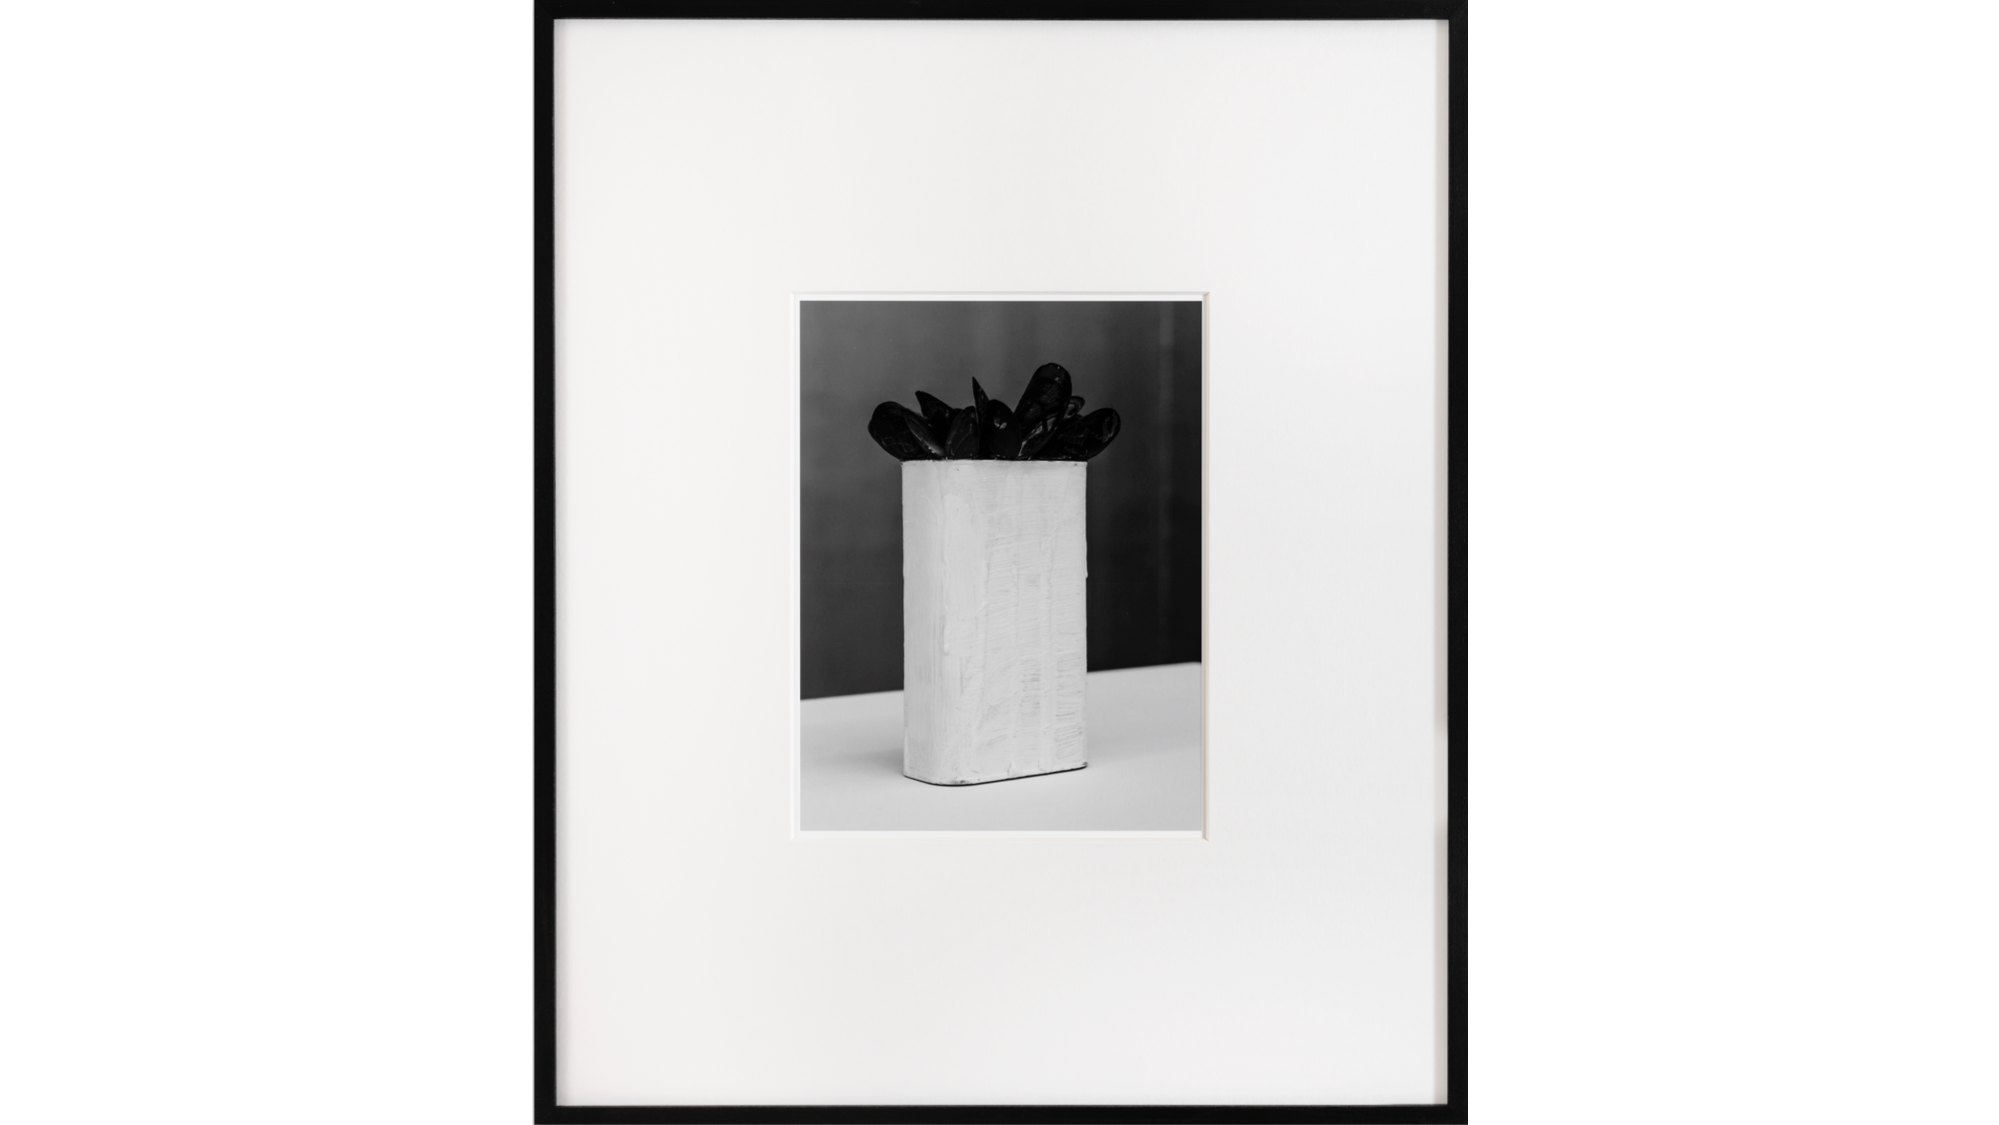   Fabian Marti , 2020, image imprimée, cadre, 57 x 68 cm, unique 